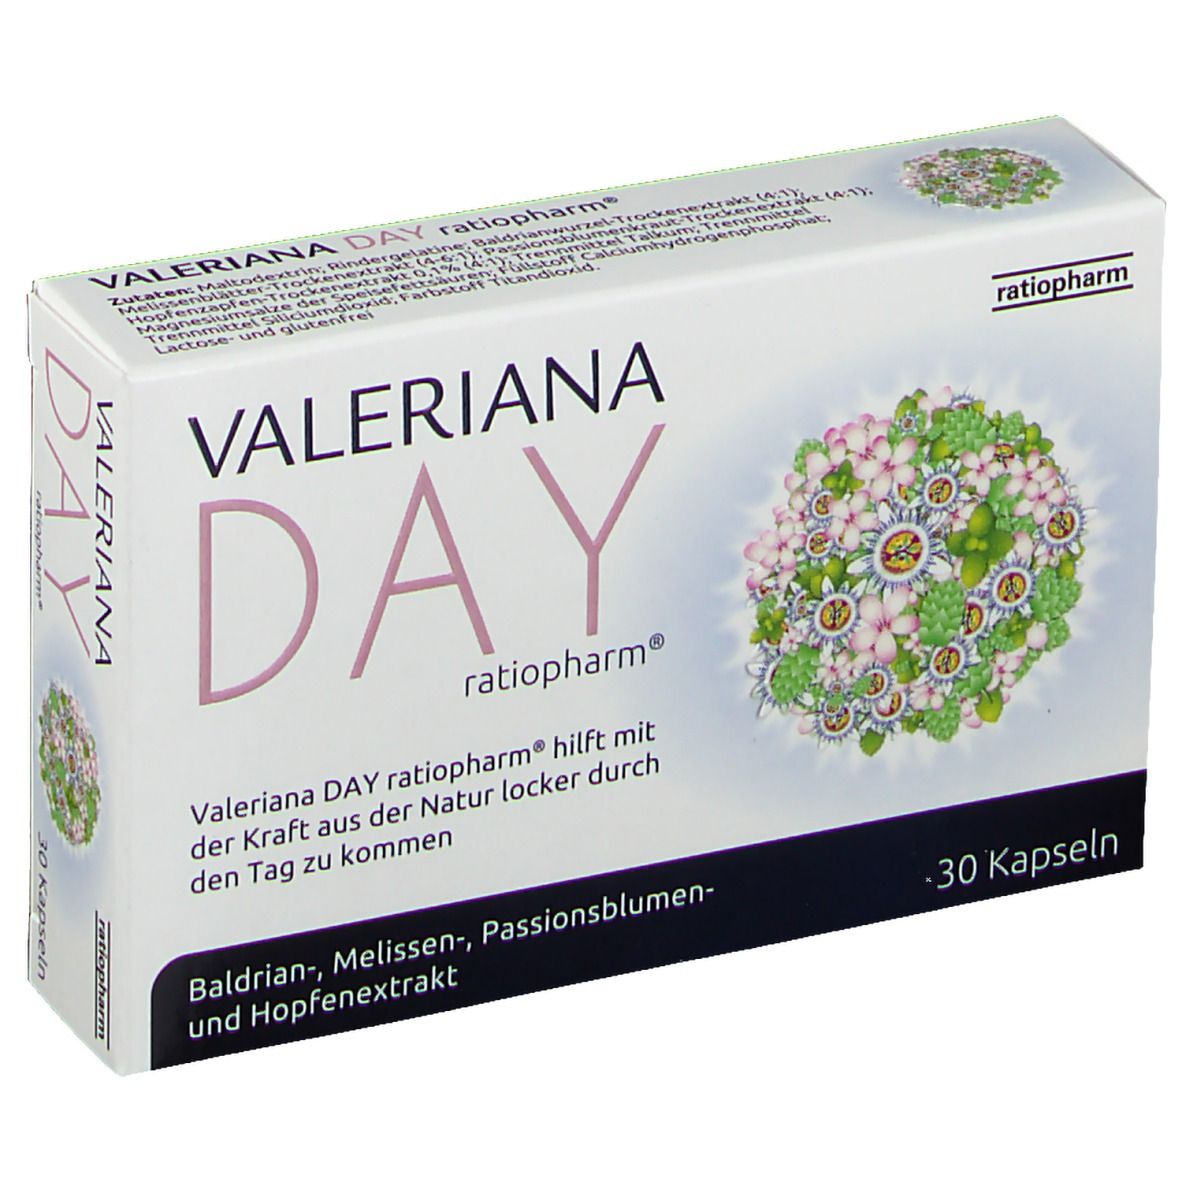 VALERIANA DAY ratiopharm®